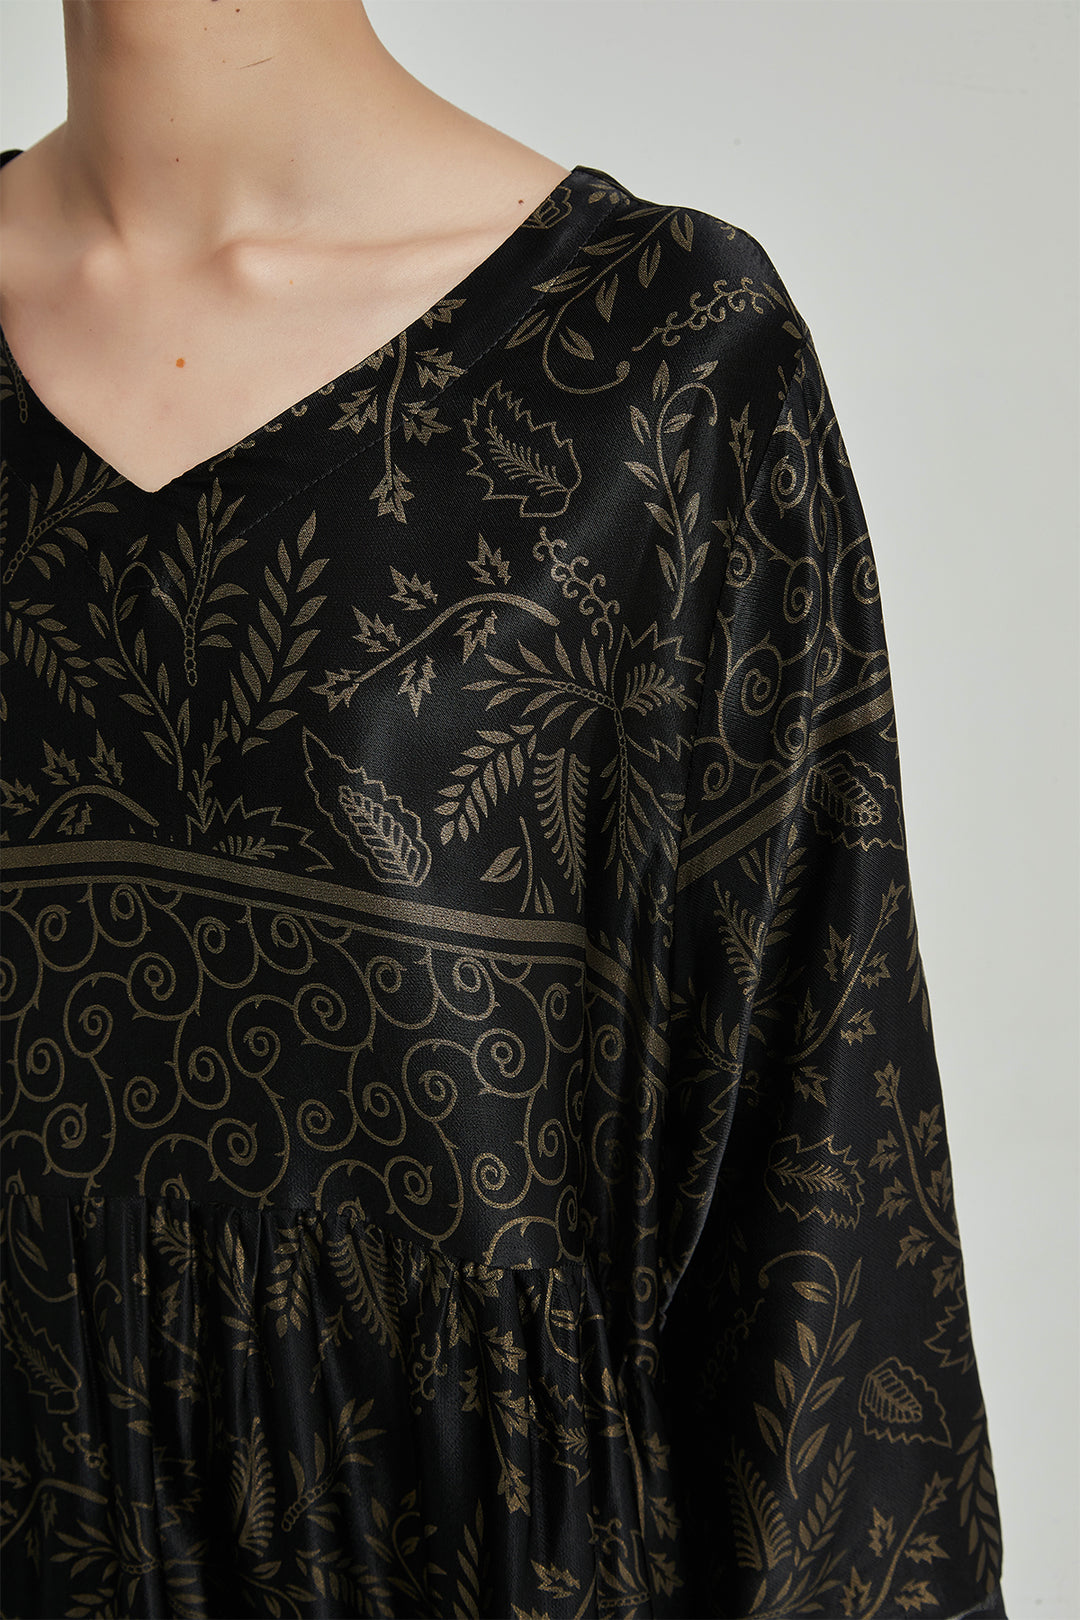 V-Neck Retro Print Elegant Cozy Silk Dress - BLACK